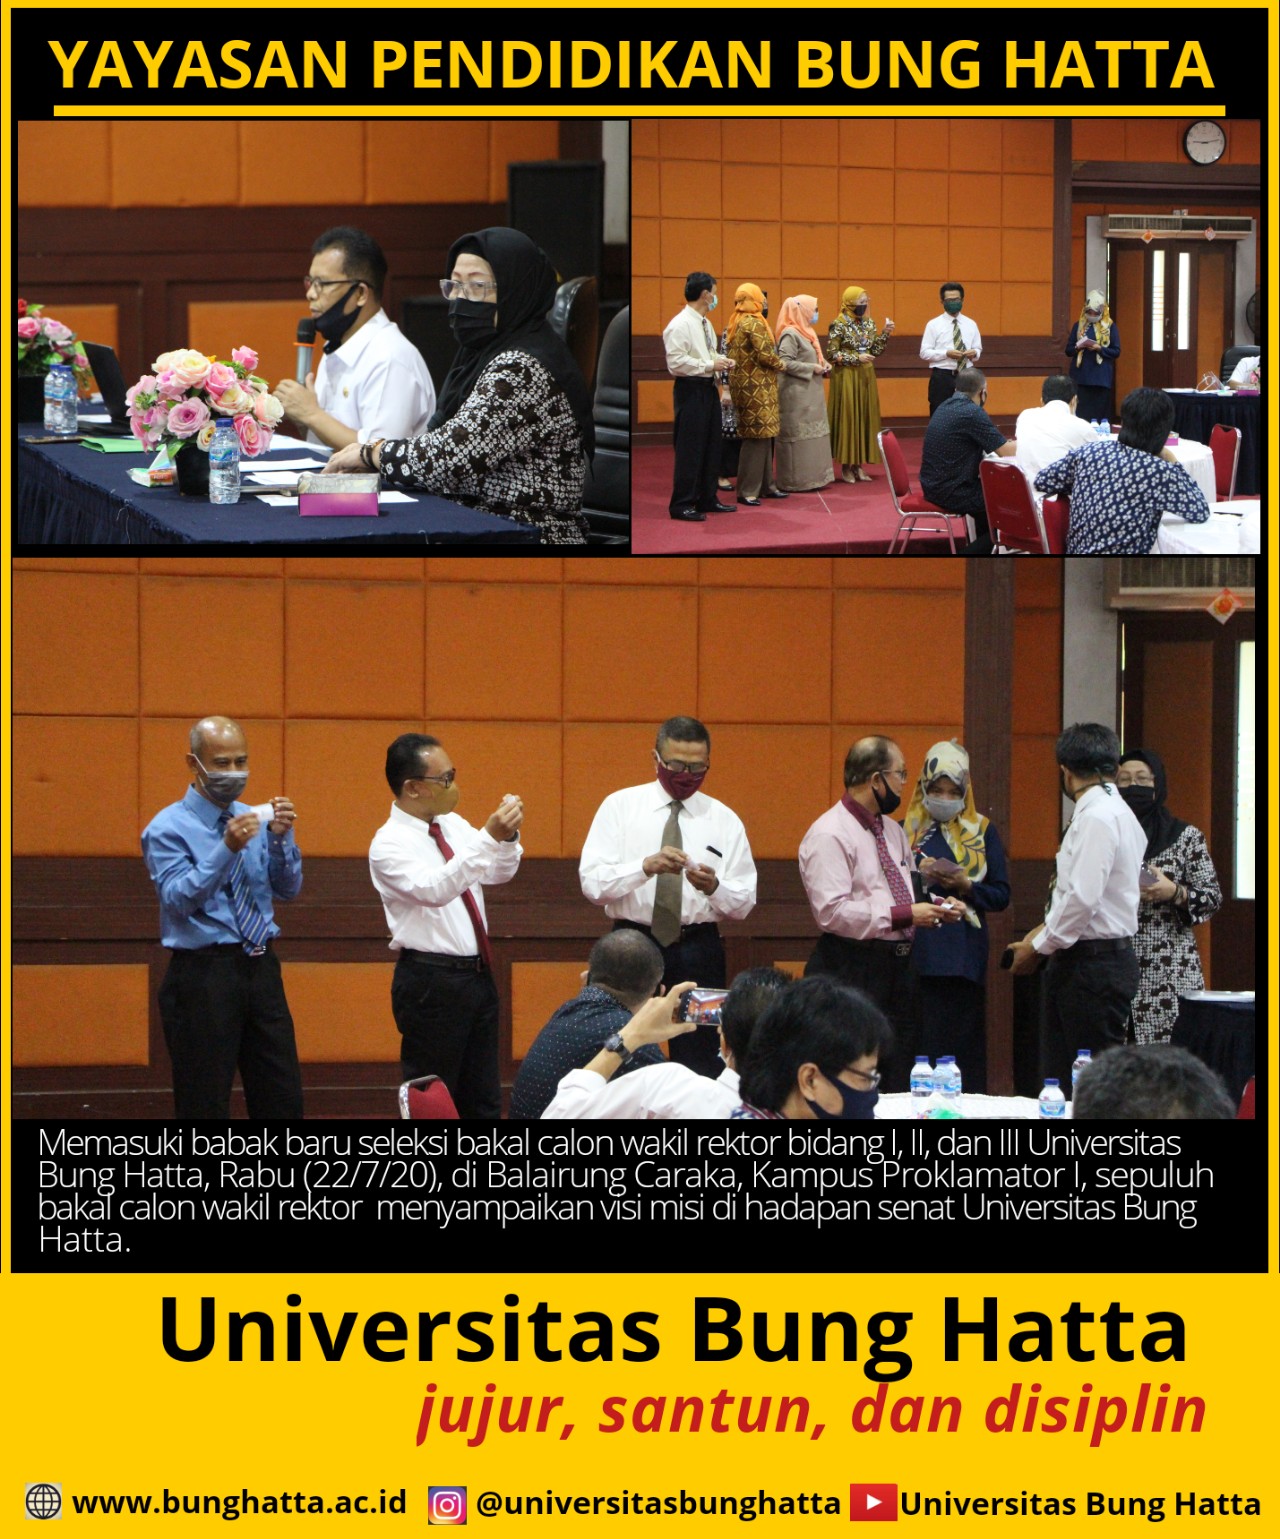 10 Bakal Calon Wakil Rektor Sampaikan Visi Misi di Hadapan Senat Universitas Bung Hatta 